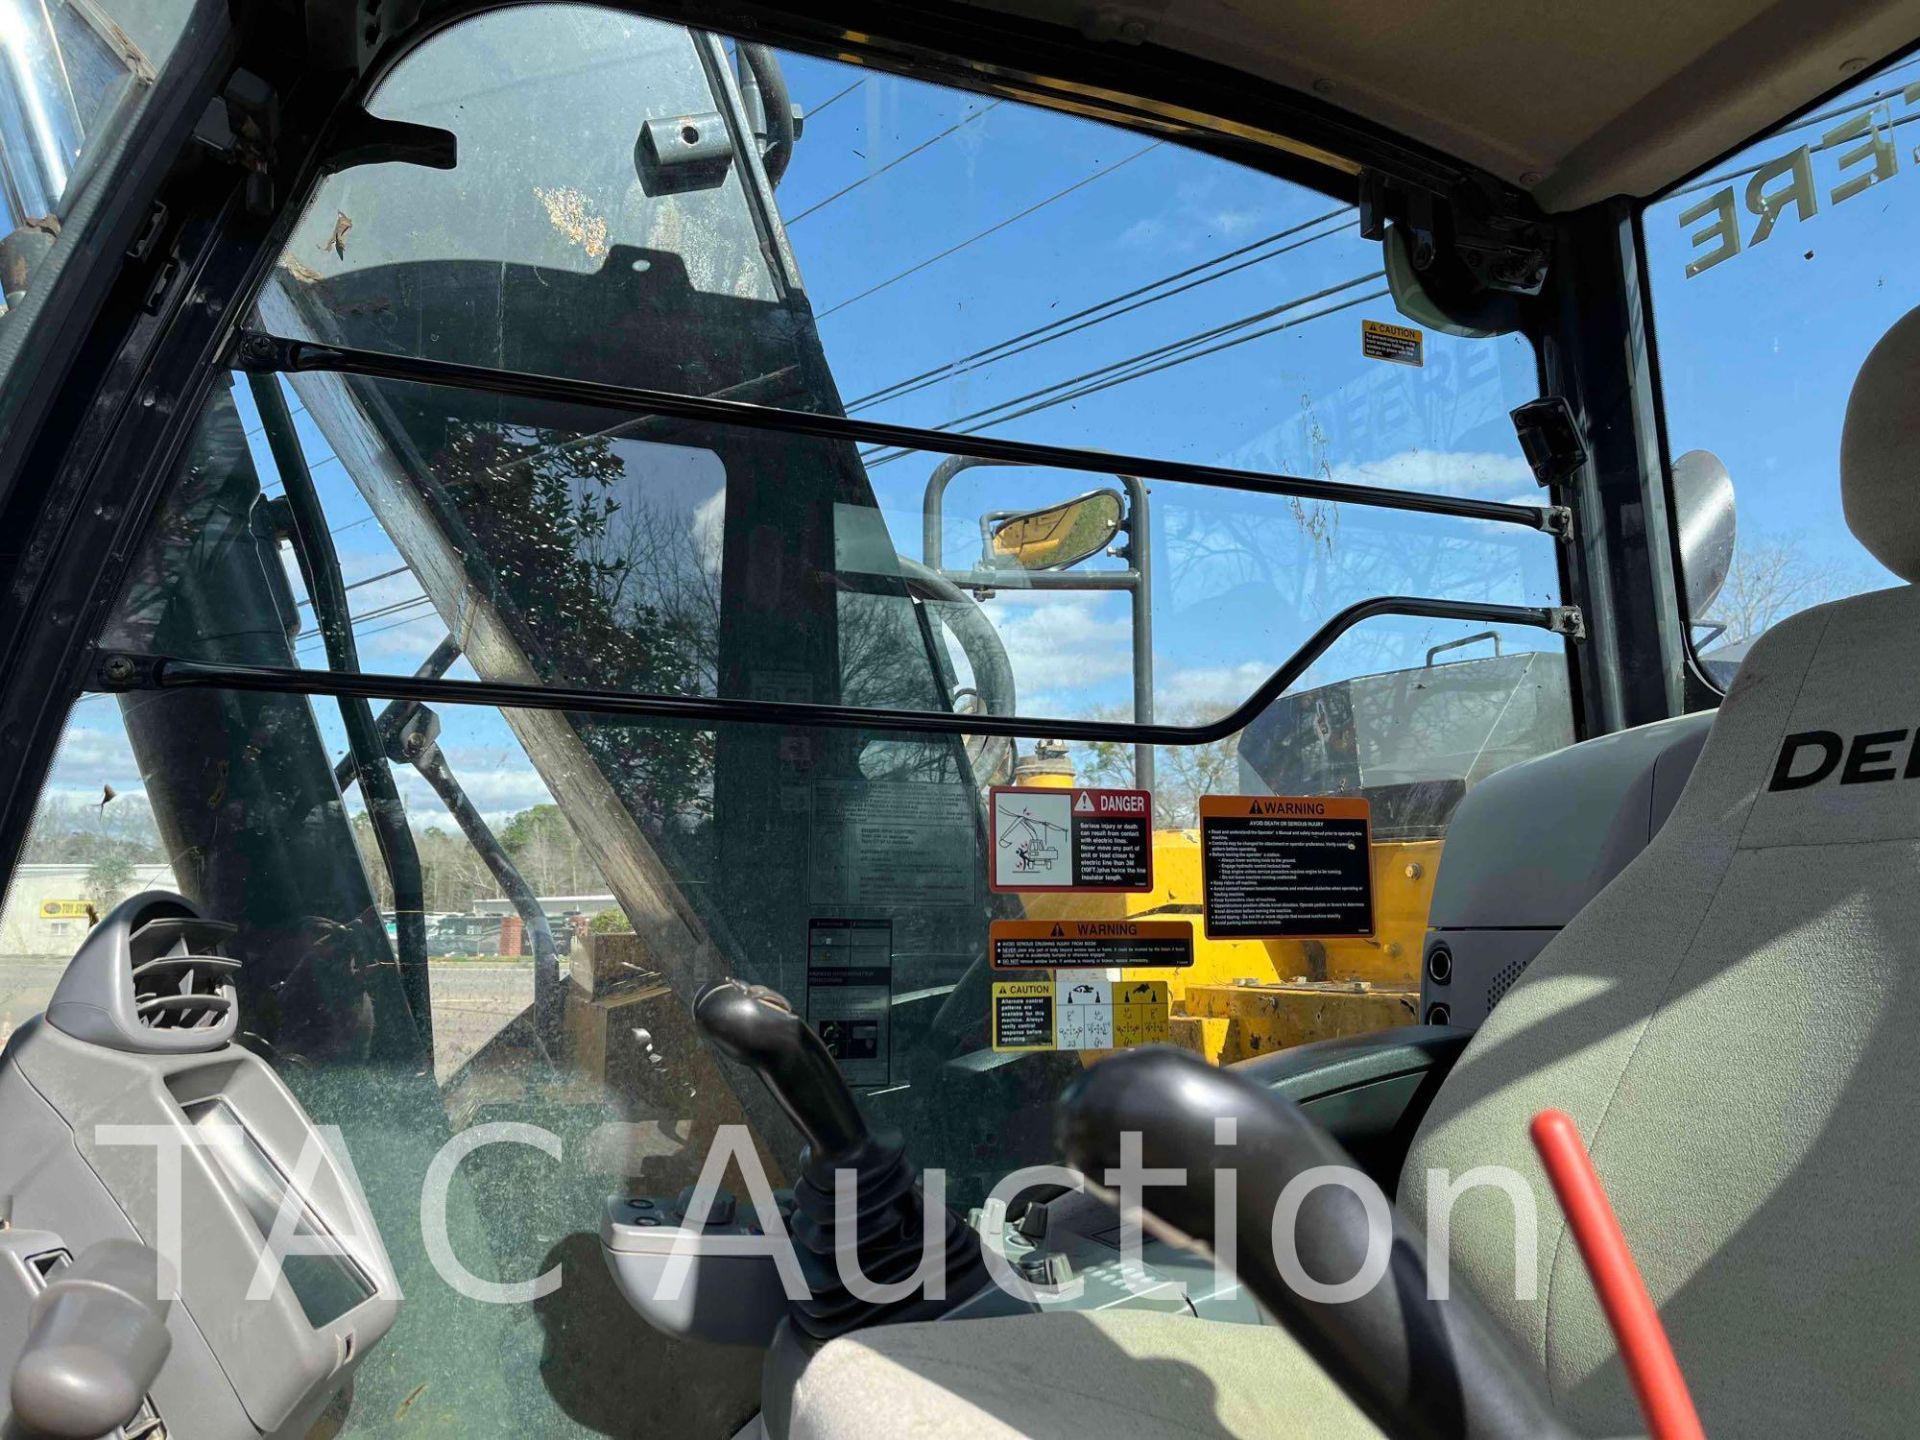 2019 John Deere 135G Excavator - Image 17 of 29